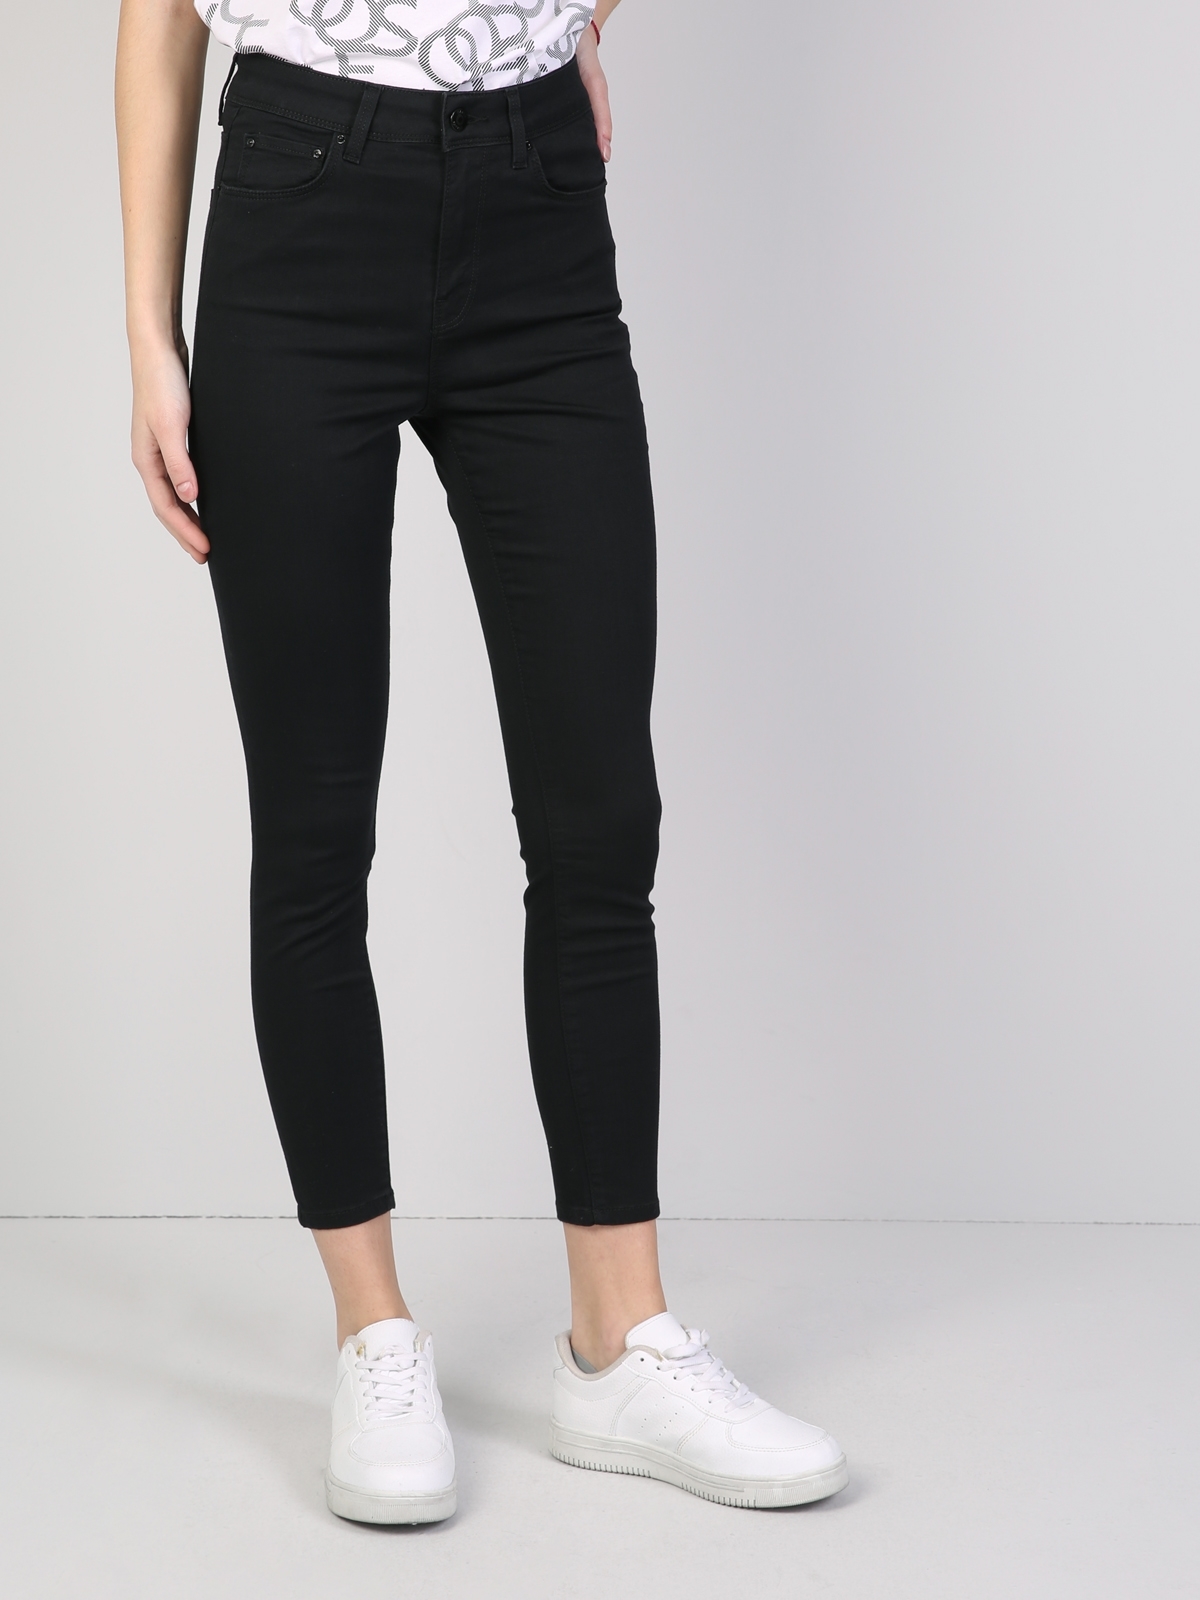 Colins 760 Dıana Yüksek Bel Dar Paça Super Slim Fit Siyah Kadın Jean Pantolon. 2